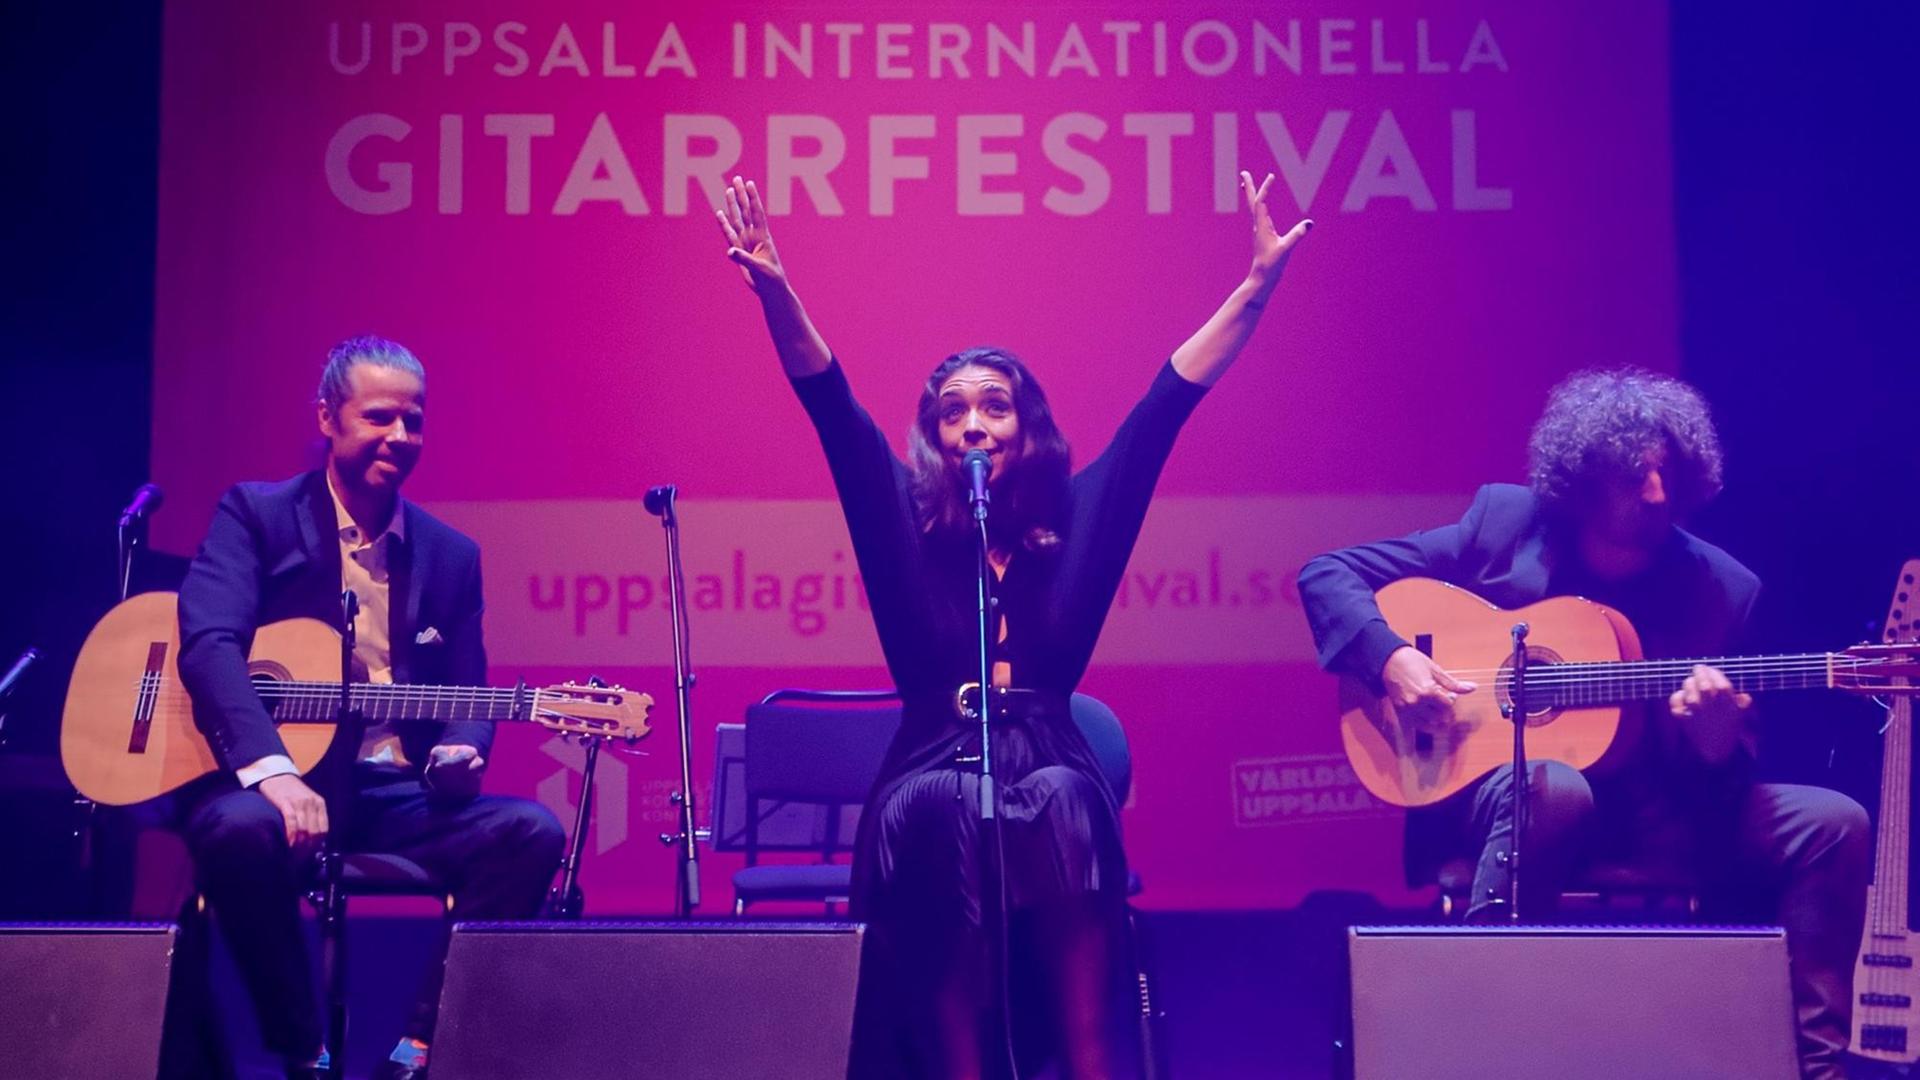 Drei Künstler sitzen auf der Bühne, die Sängerin in der Mitte, die beiden Gitarristen ihr zu Seite. Sie streckt beide Arme in die Höhe, im Hintergrund das Festivalplakat auf pinkfarbenem Grund: Uppsala Internationella Gitarrfestival